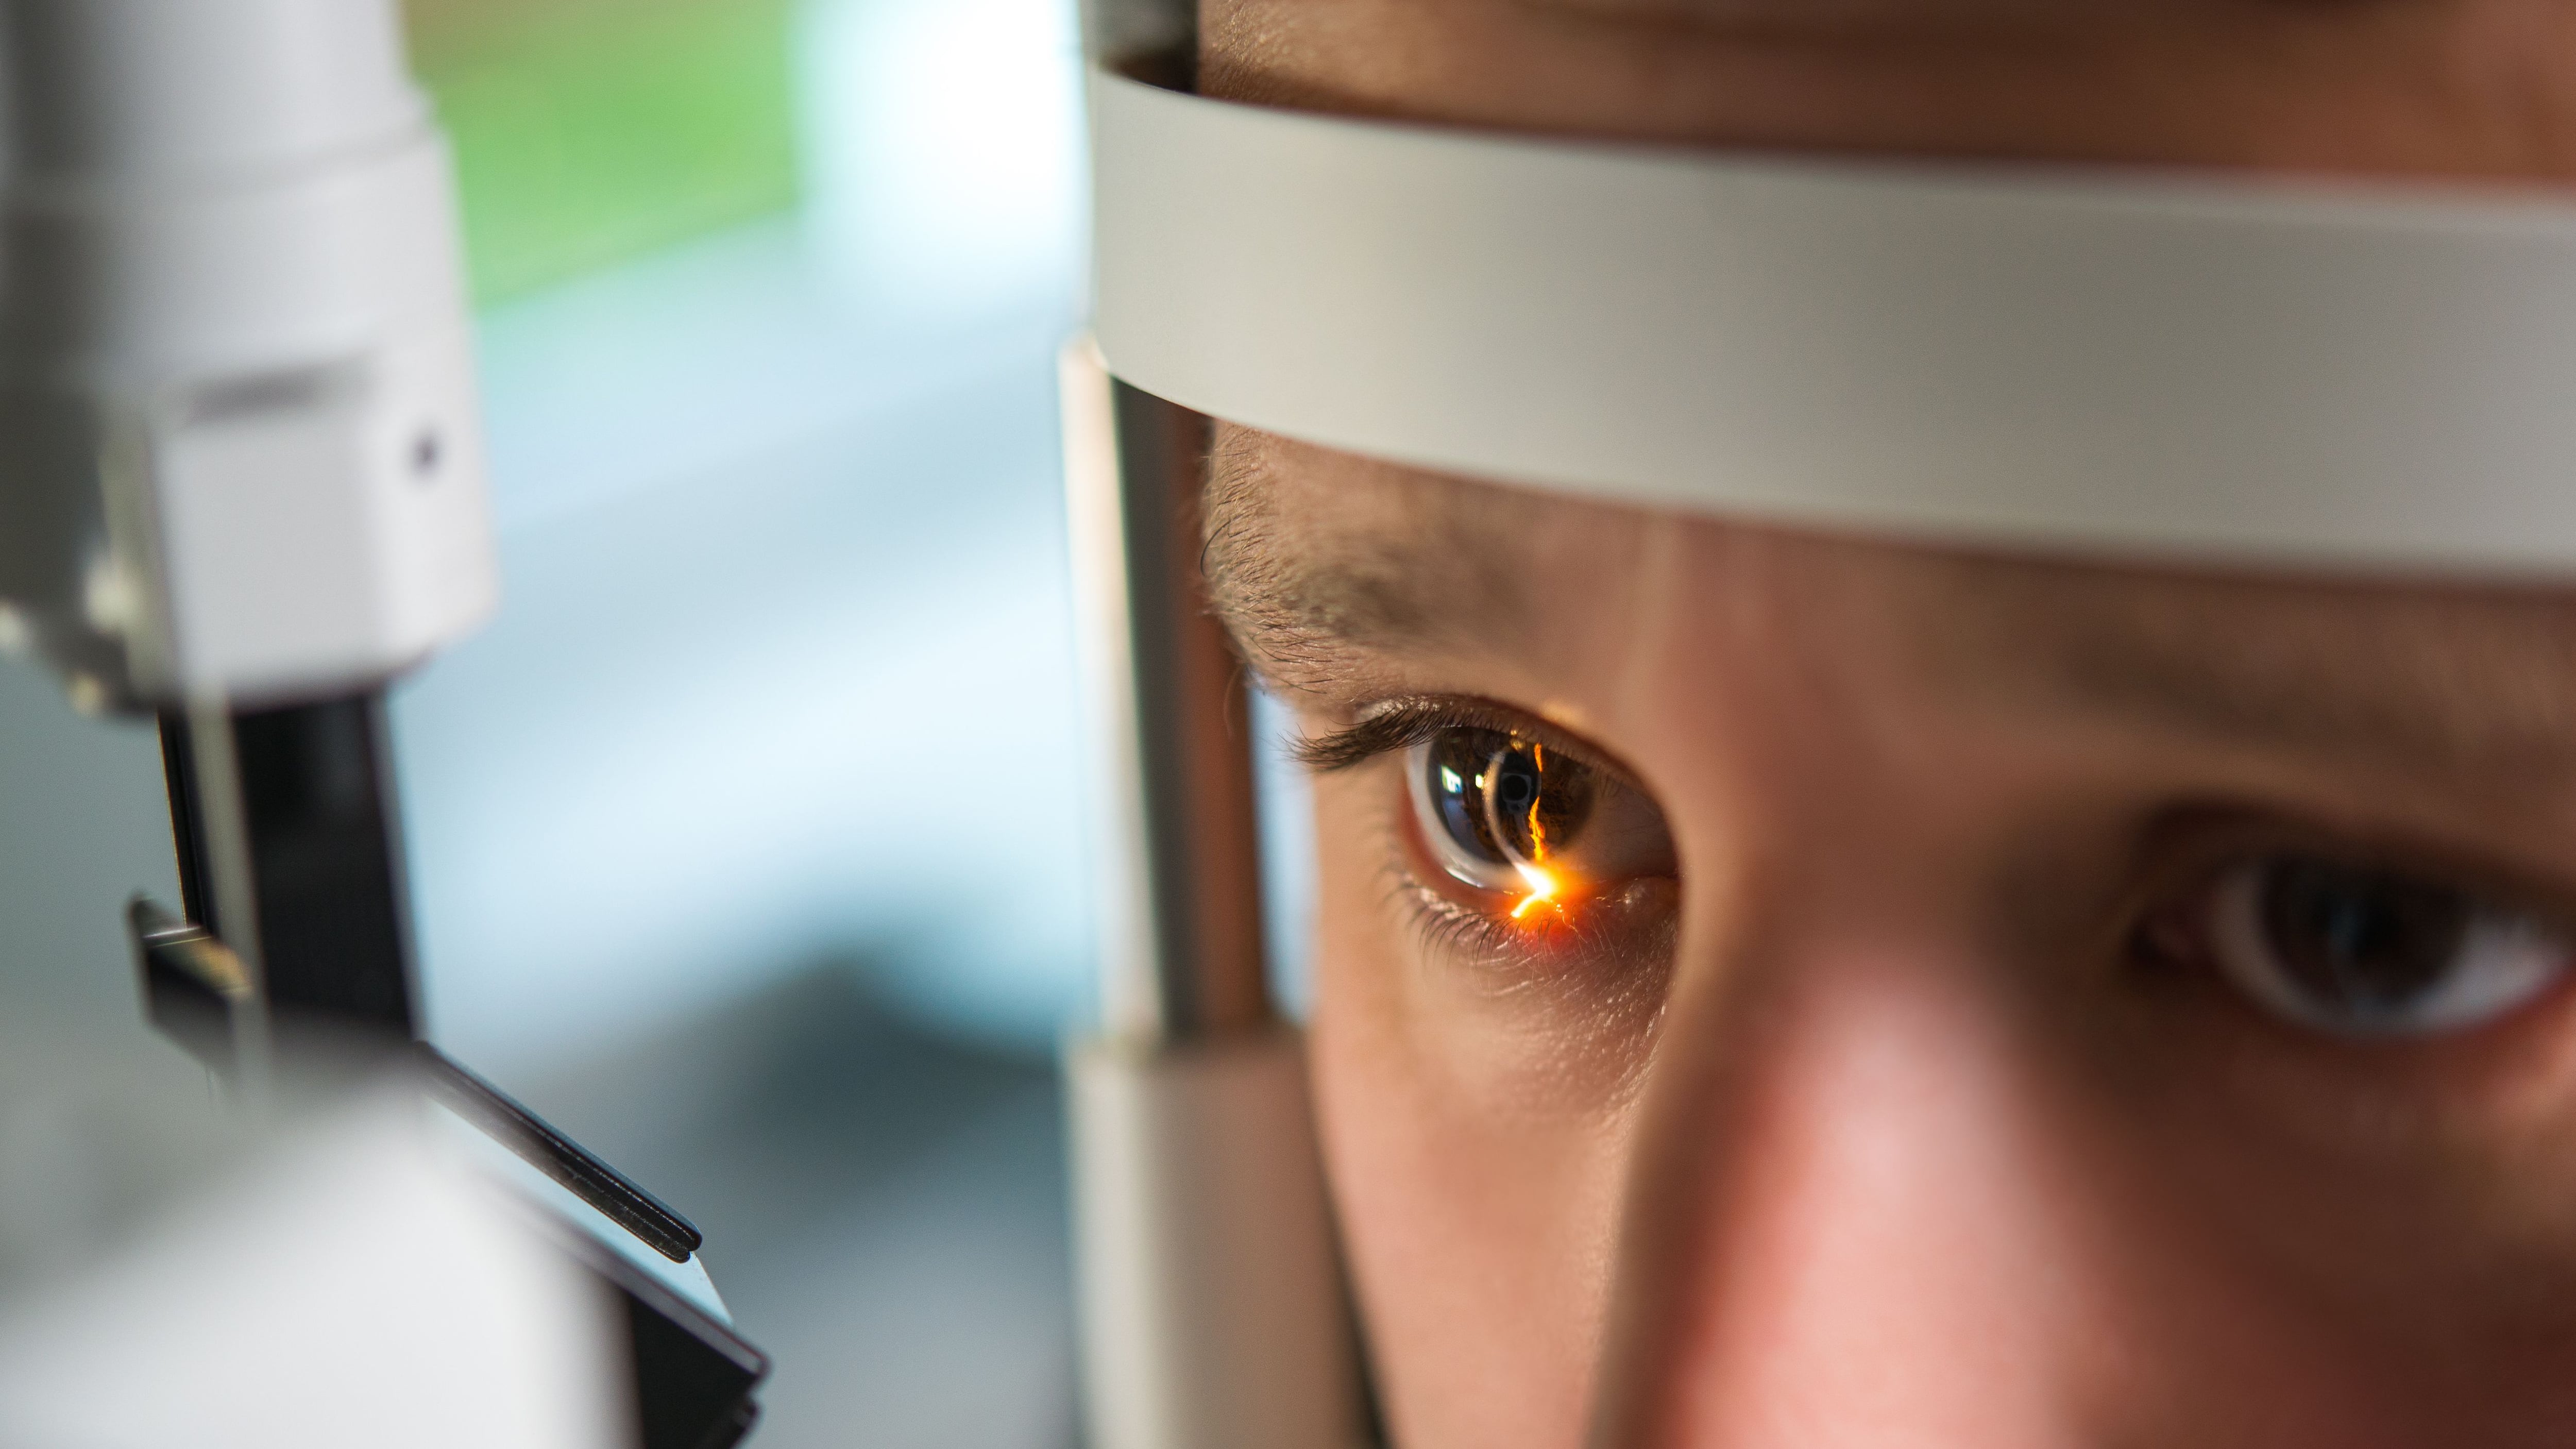 Un oftalmólogo realiza una revisión ocular a un paciente (Shutterstock)